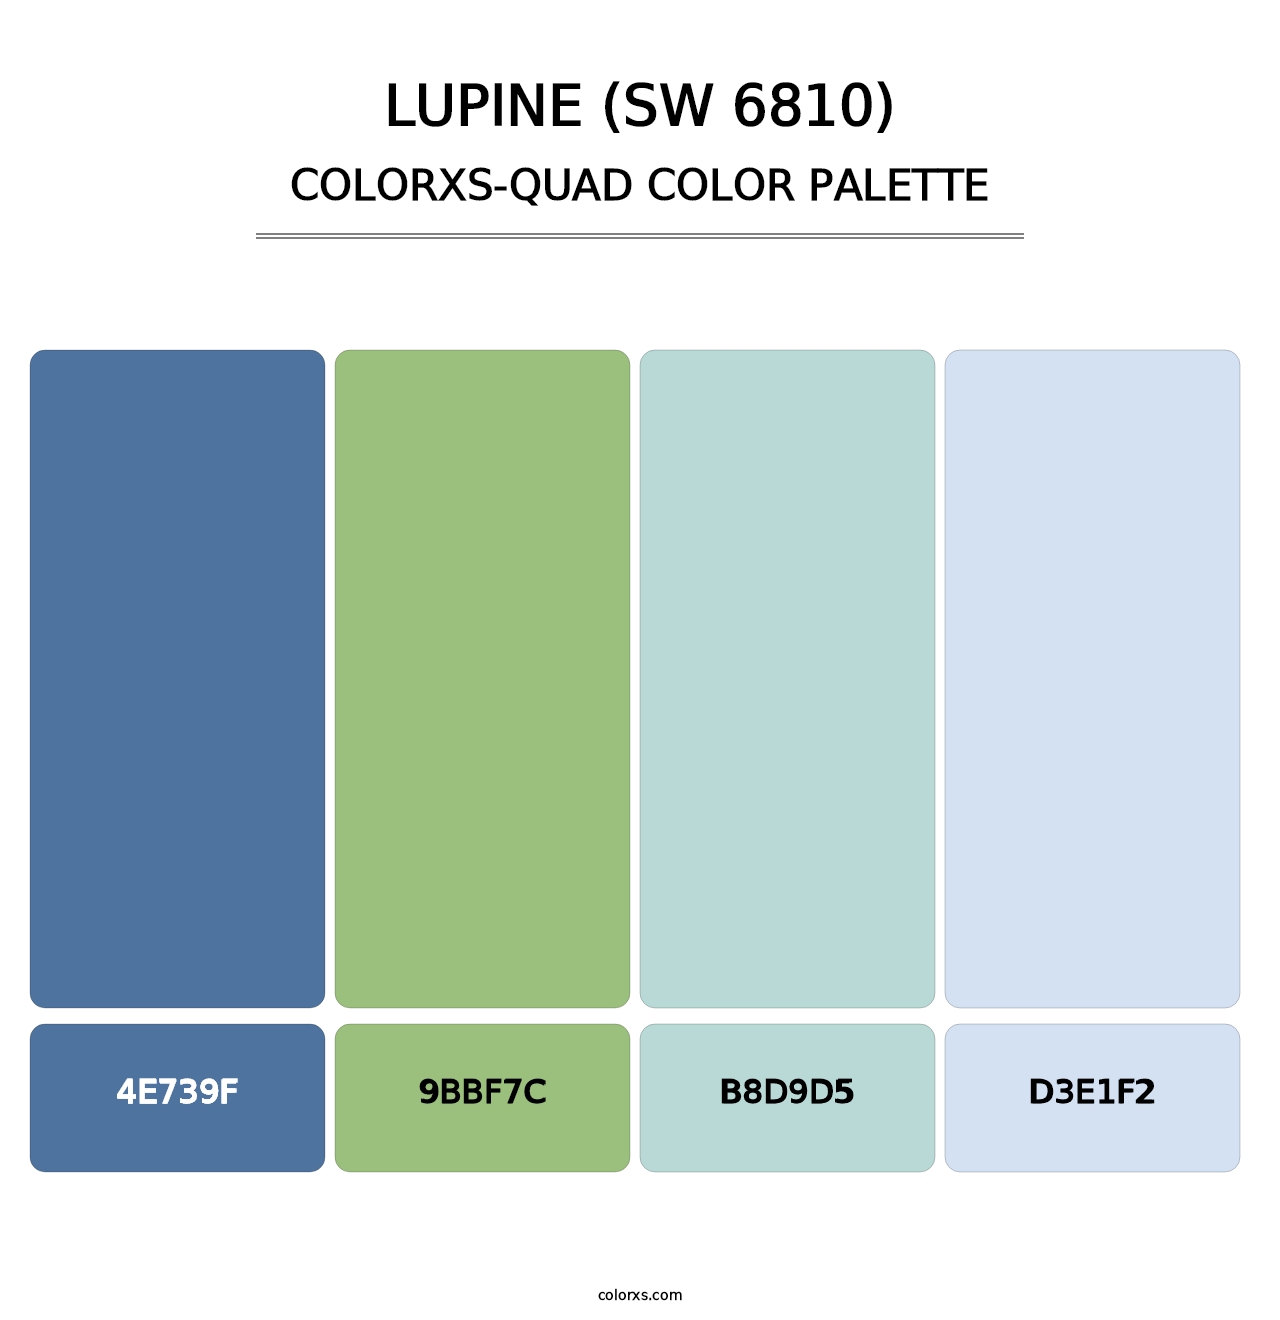 Lupine (SW 6810) - Colorxs Quad Palette